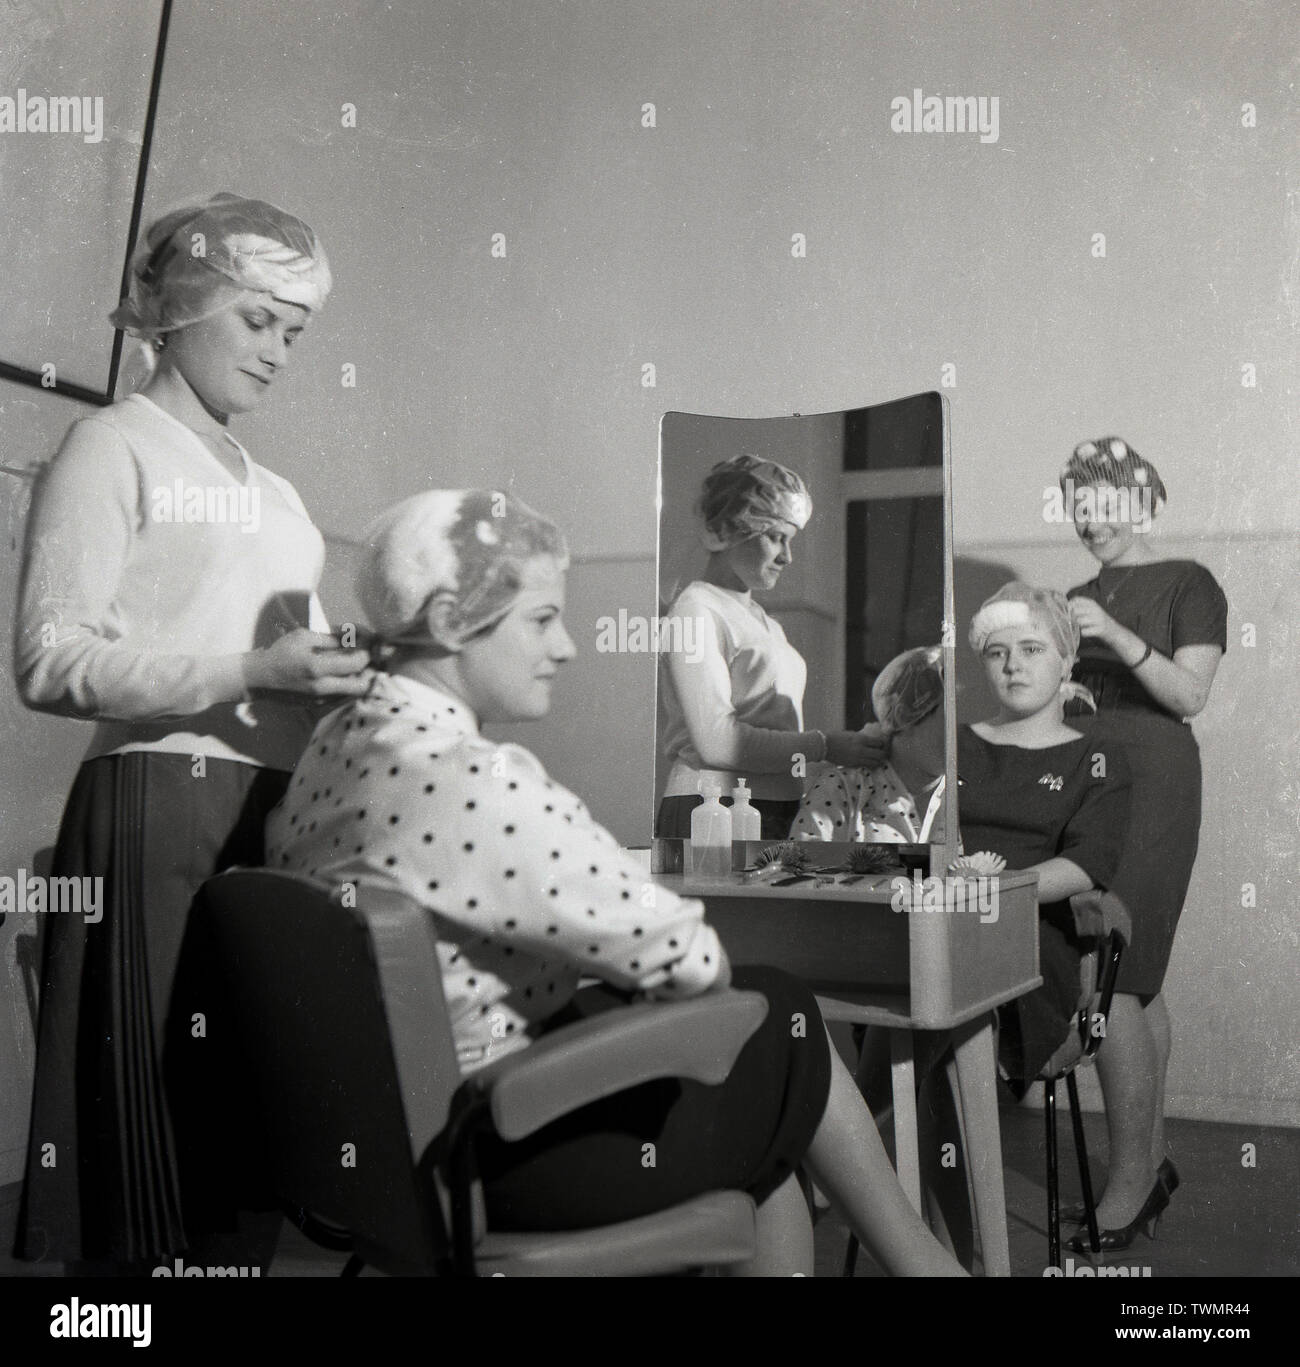 1960, historische, bei einem Friseur Schule oder Hochschule, zwei junge Lady's Sitzen auf Stühlen gegenüber Spiegel mit ihrem Haar in den Netzen von zwei Studentinnen, England, UK vorbereitet. Stockfoto